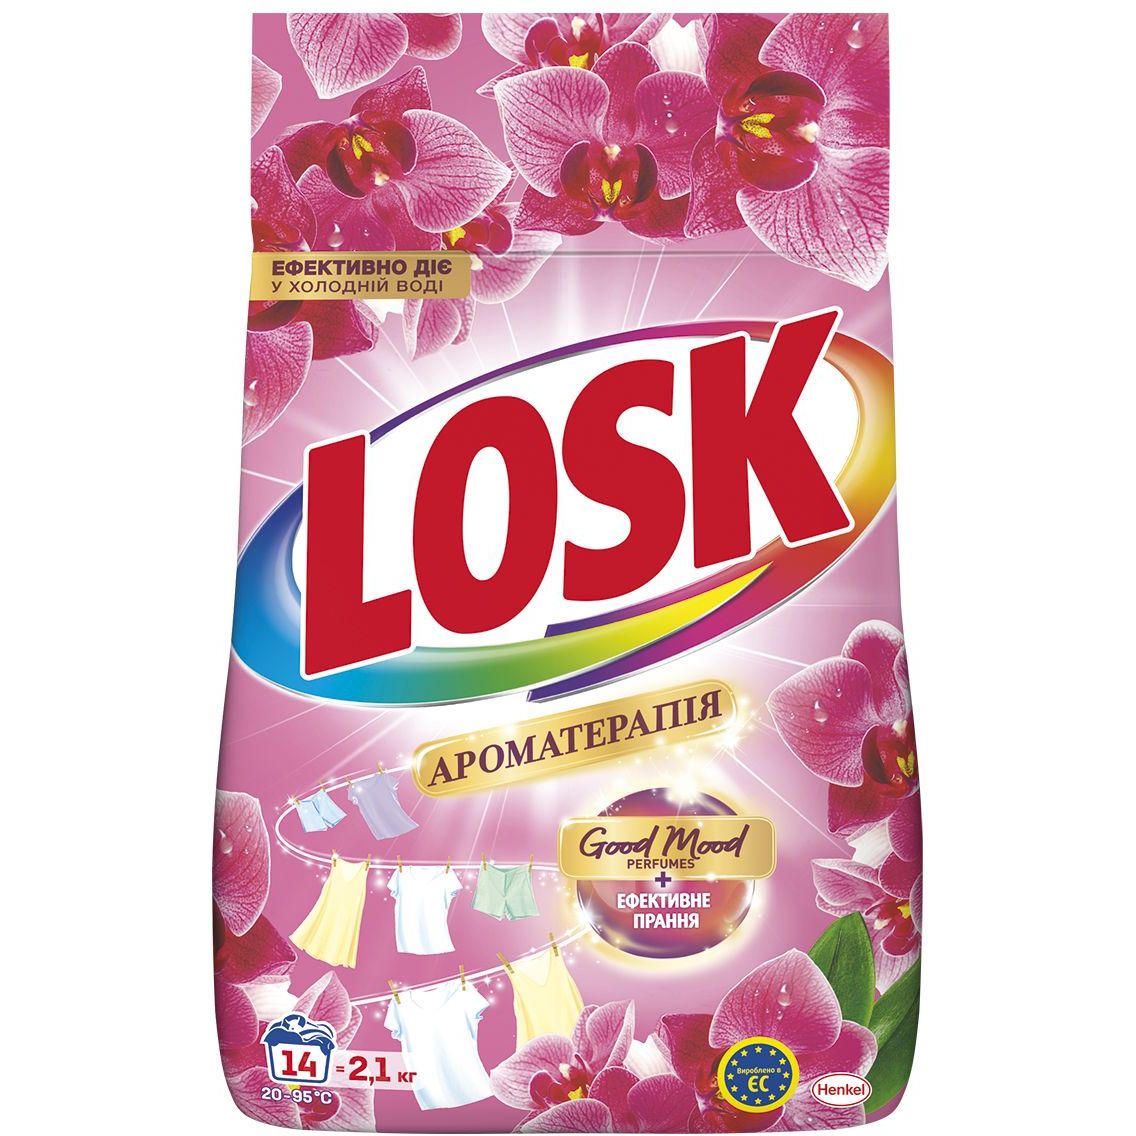 Порошок для стирки Losk Ароматерапия Эфирные масла и аромат Малазийского цветка 2.1 кг - фото 1